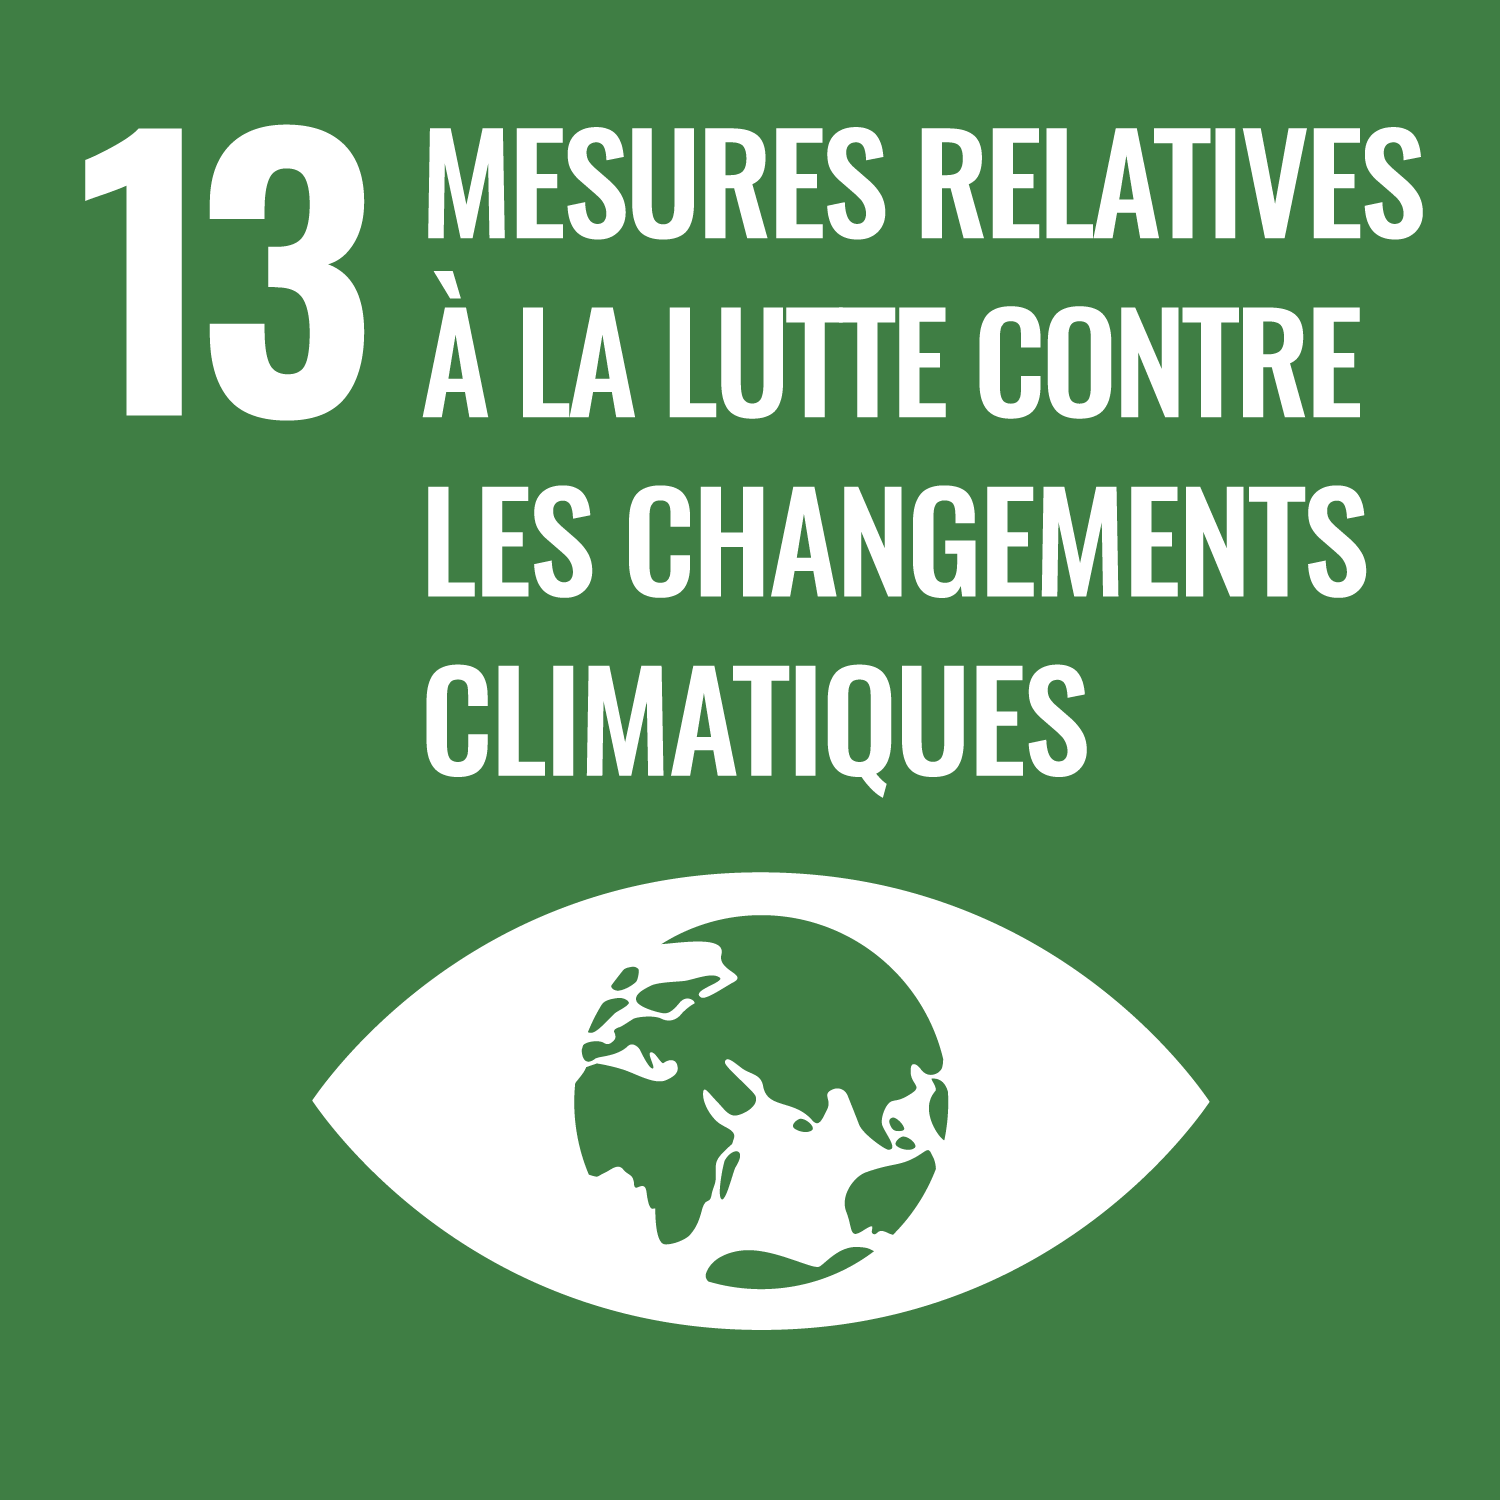 SDG 13 - Mesures relatives à la lutte contre le changement climatique